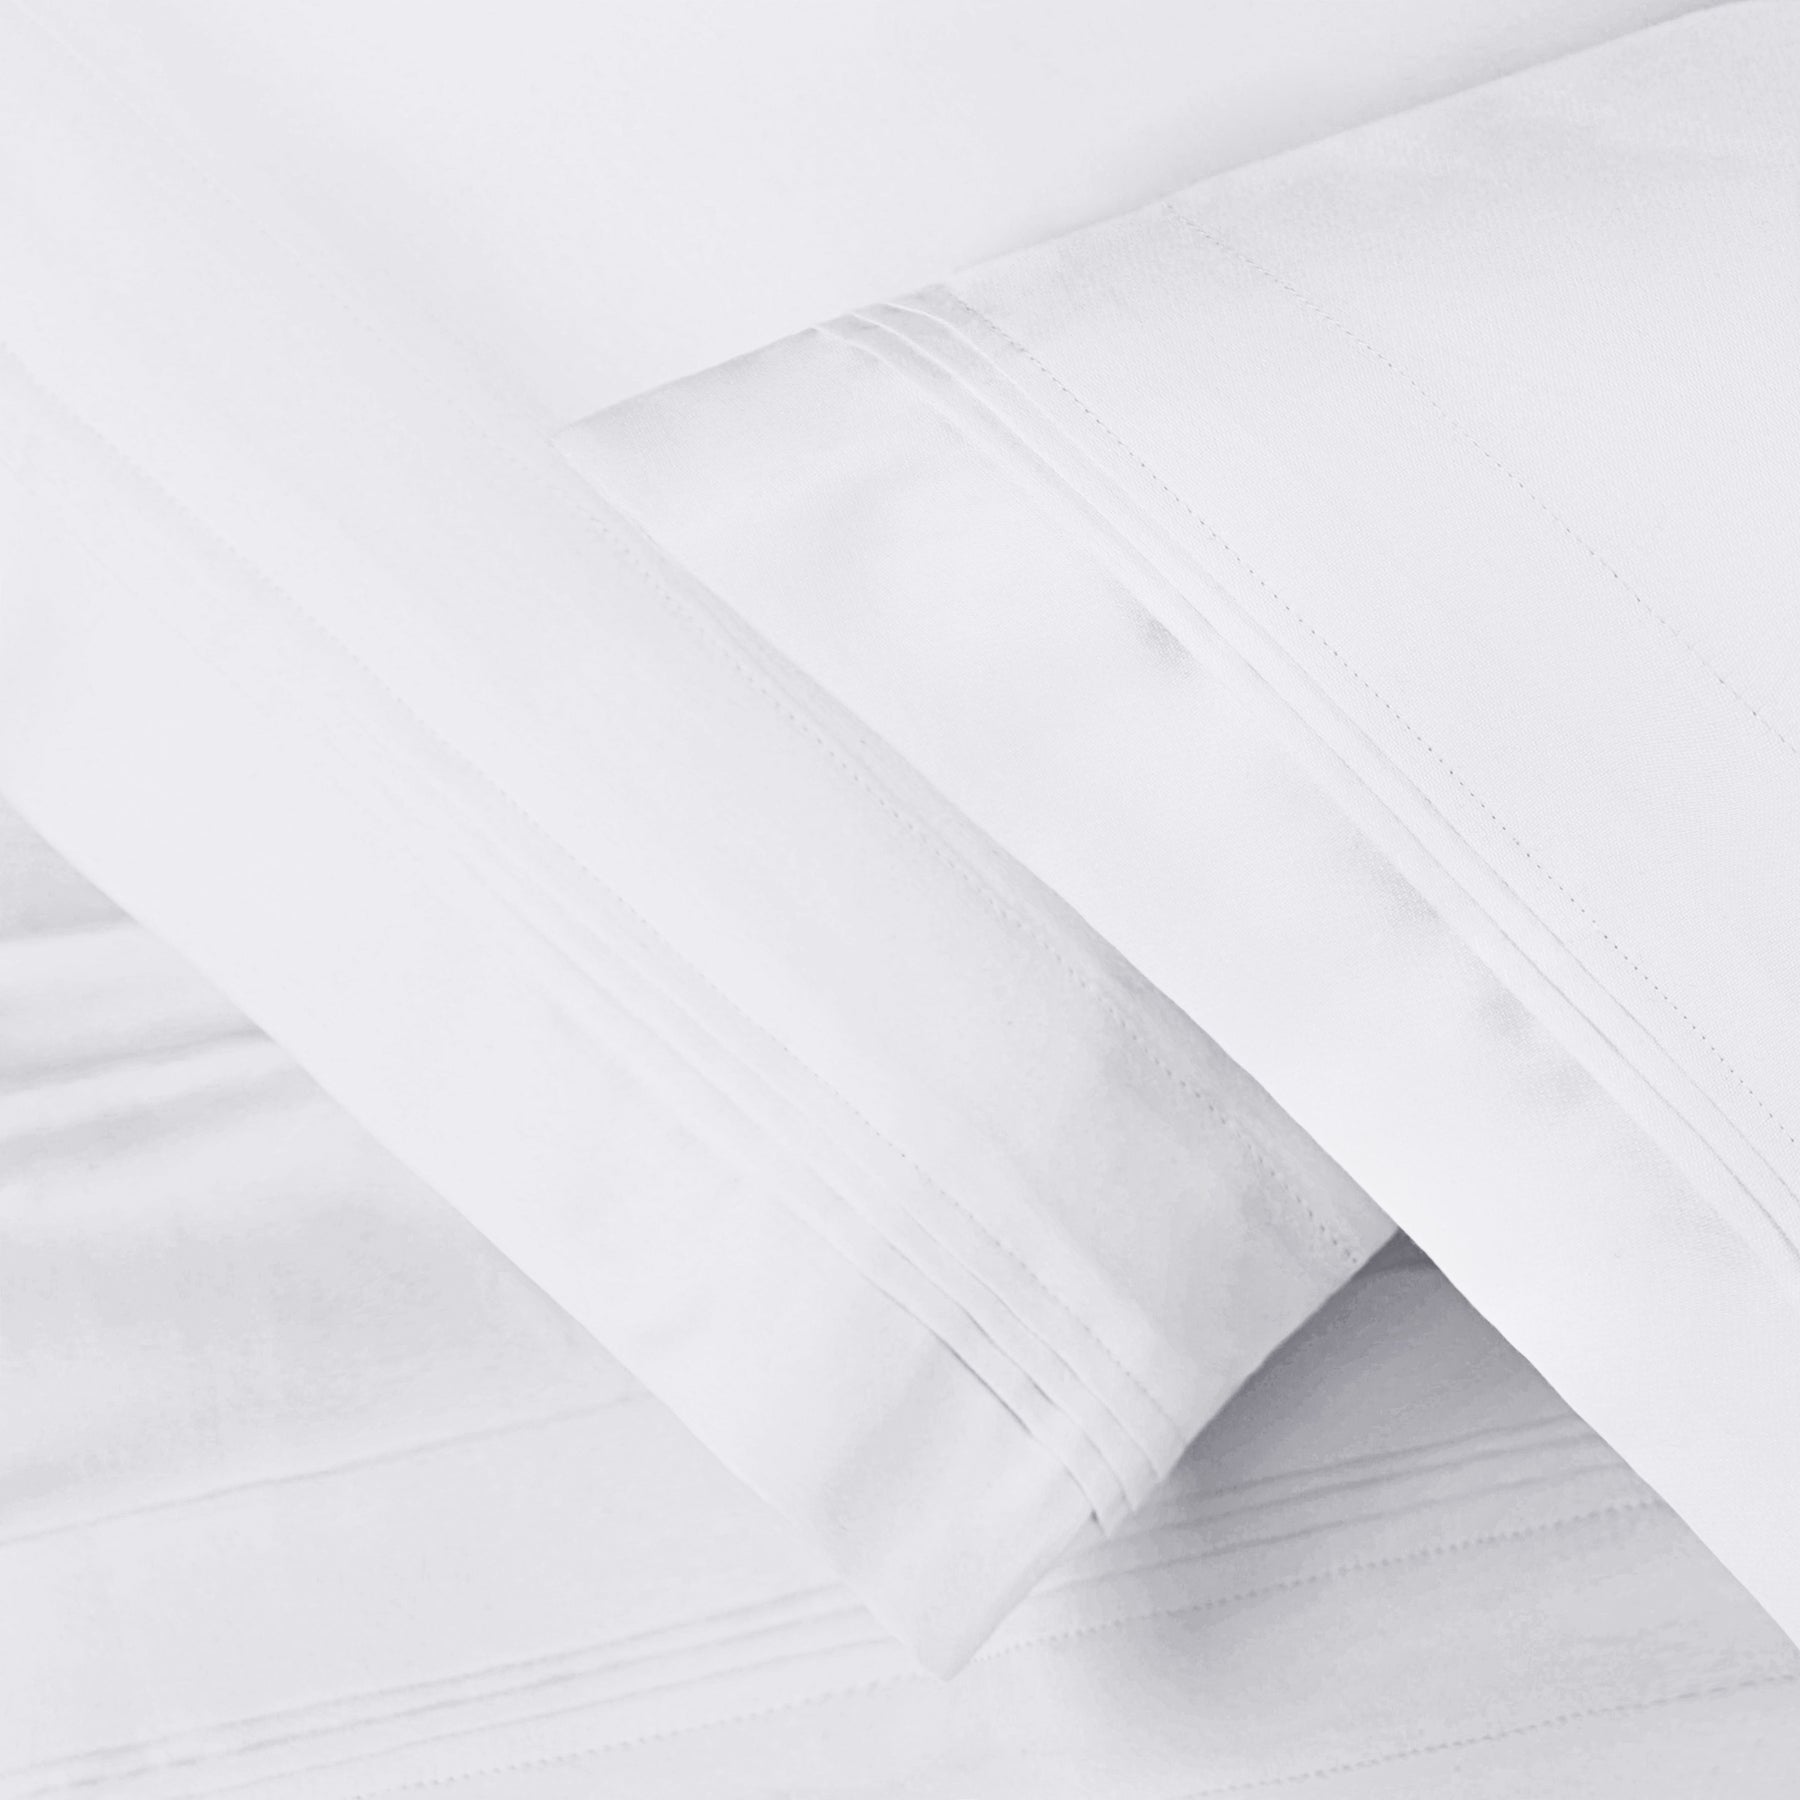 Superior 1000-Thread Count Egyptian Cotton Solid Pillowcase Set - White